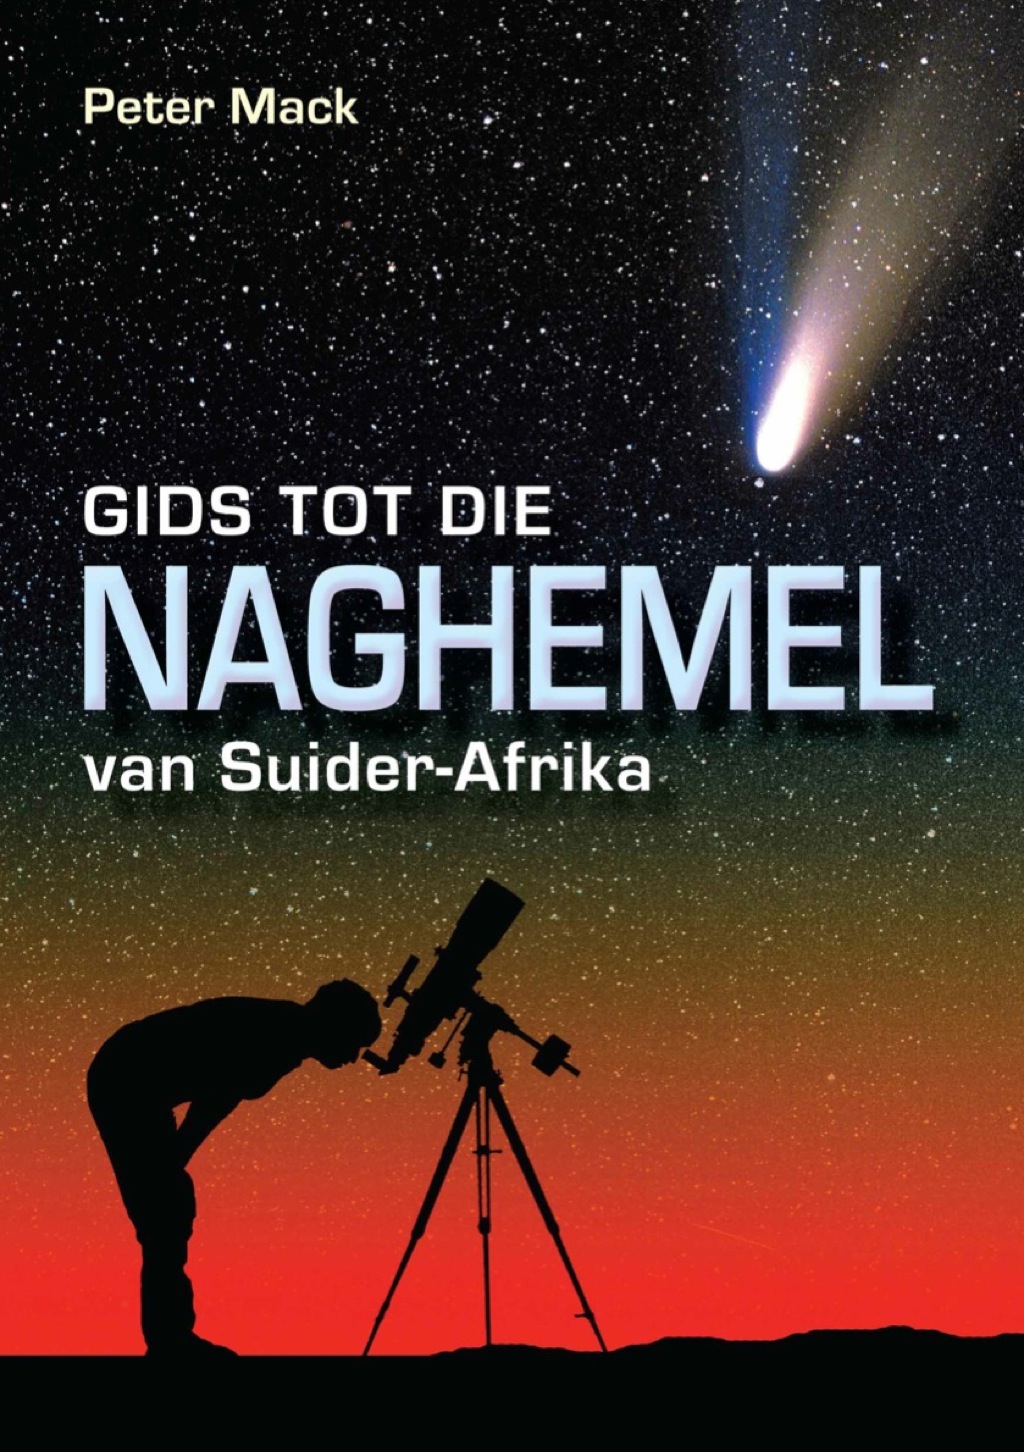 Gids tot die Naghemel van Suider-Afrika (eBook) - Peter Mack